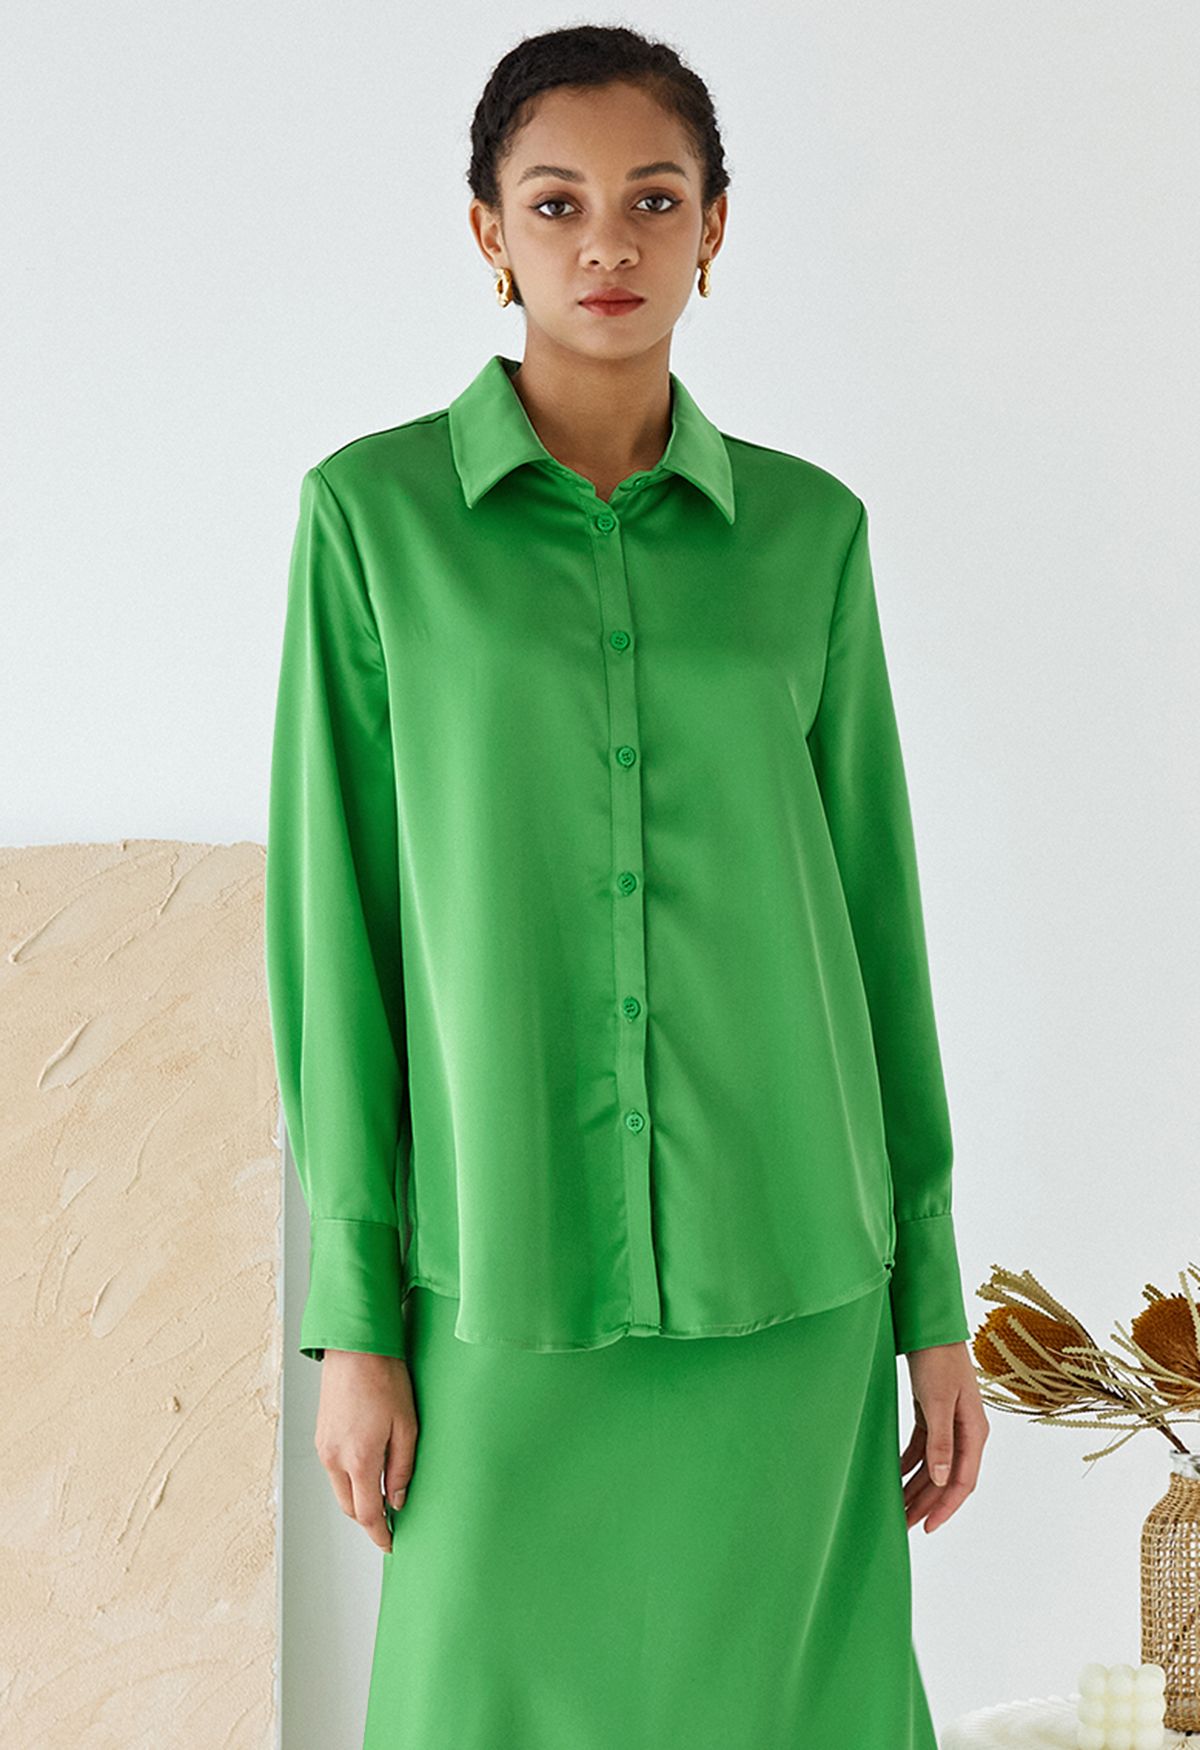 Camisa abotonada con acabado satinado en verde